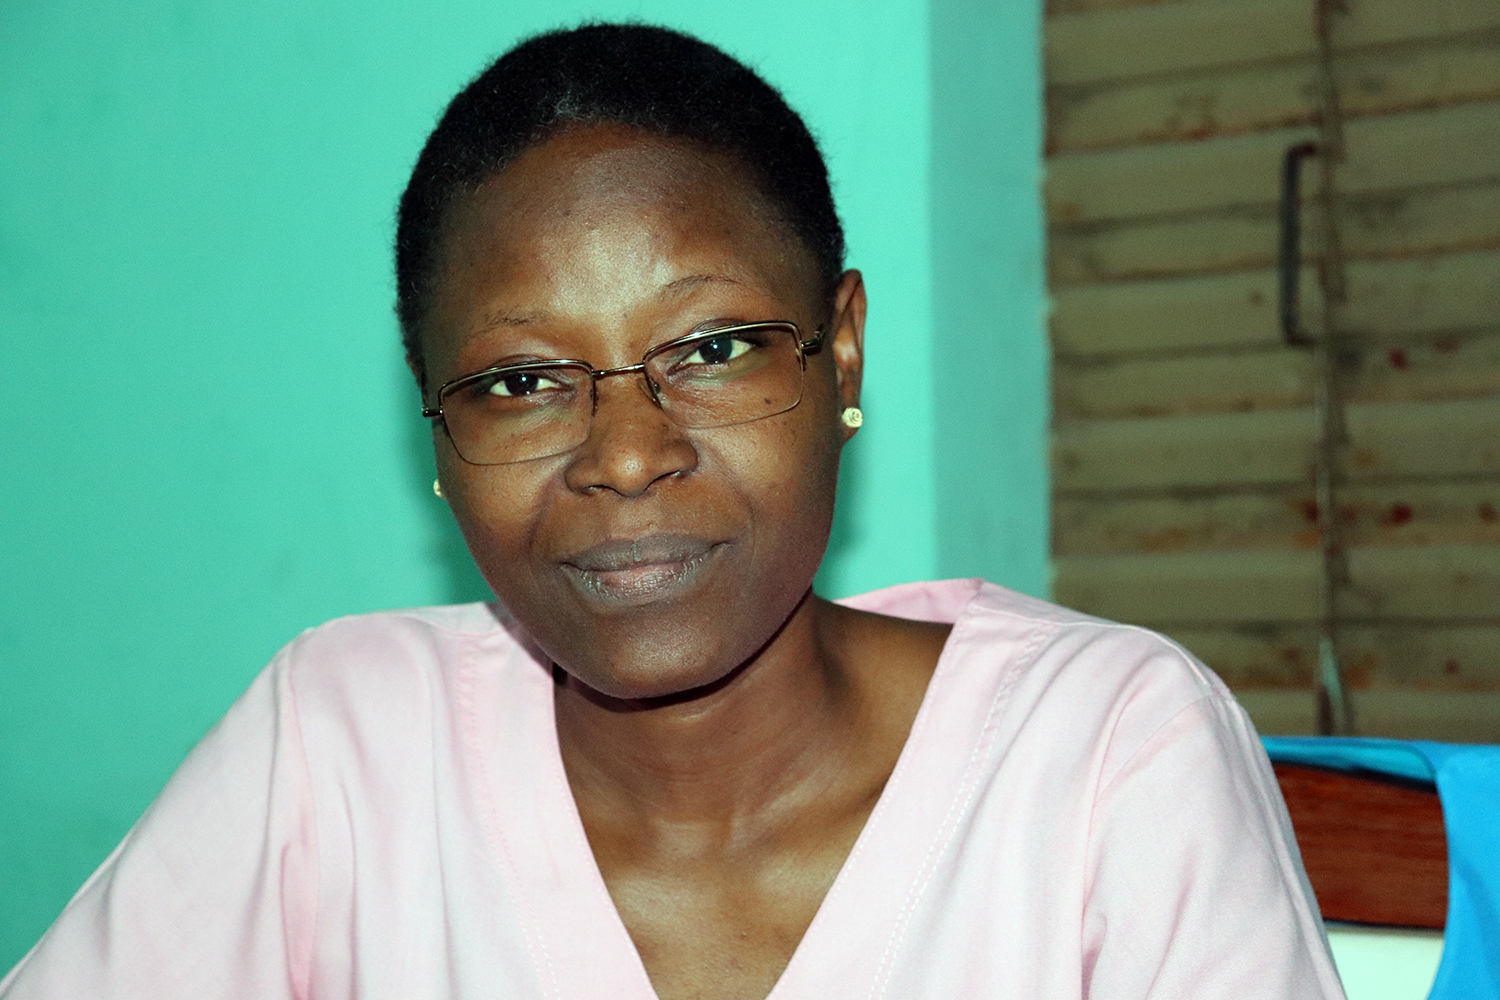 La Docteur Firmine KPELLY travaille dans la clinique privée Nassera, située dans le quartier le plus peuplé de Natitingou. 